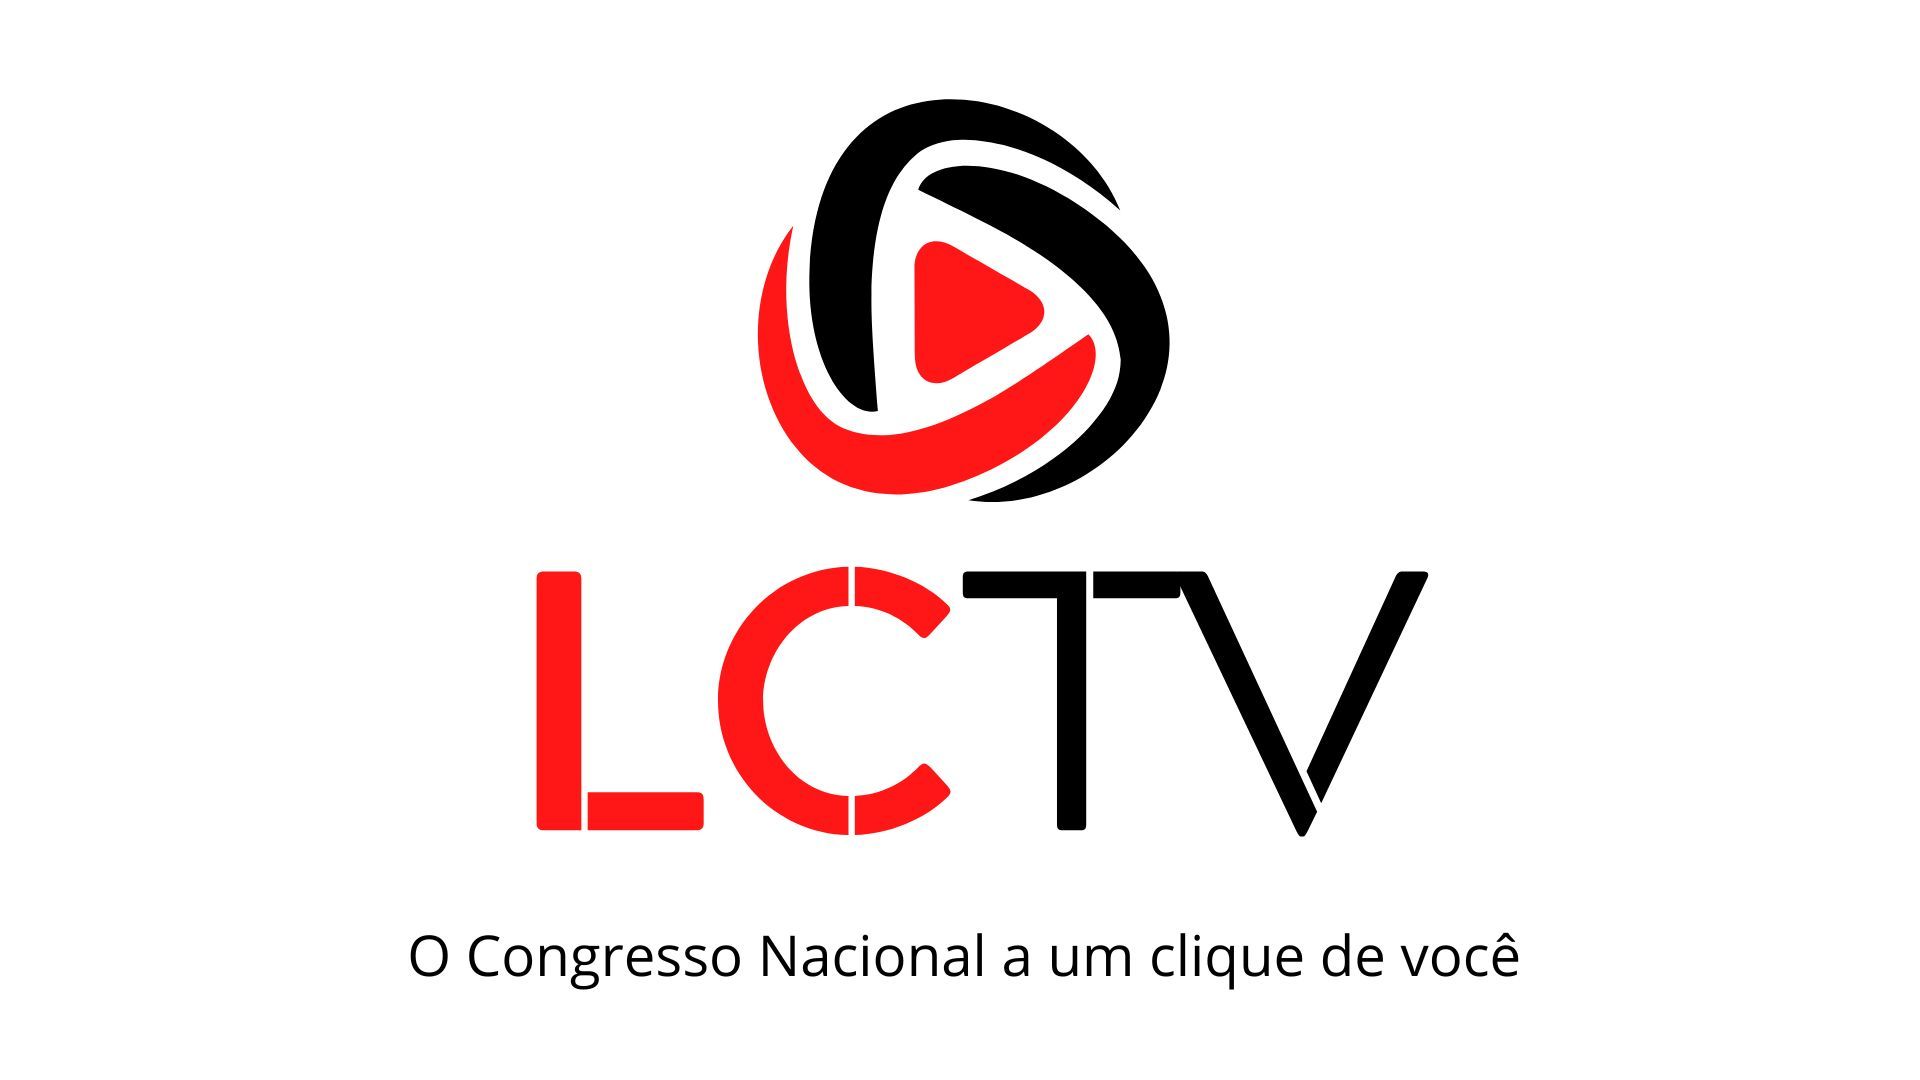 LCTV - Atividades Parlamentares direto do Congresso Nacional